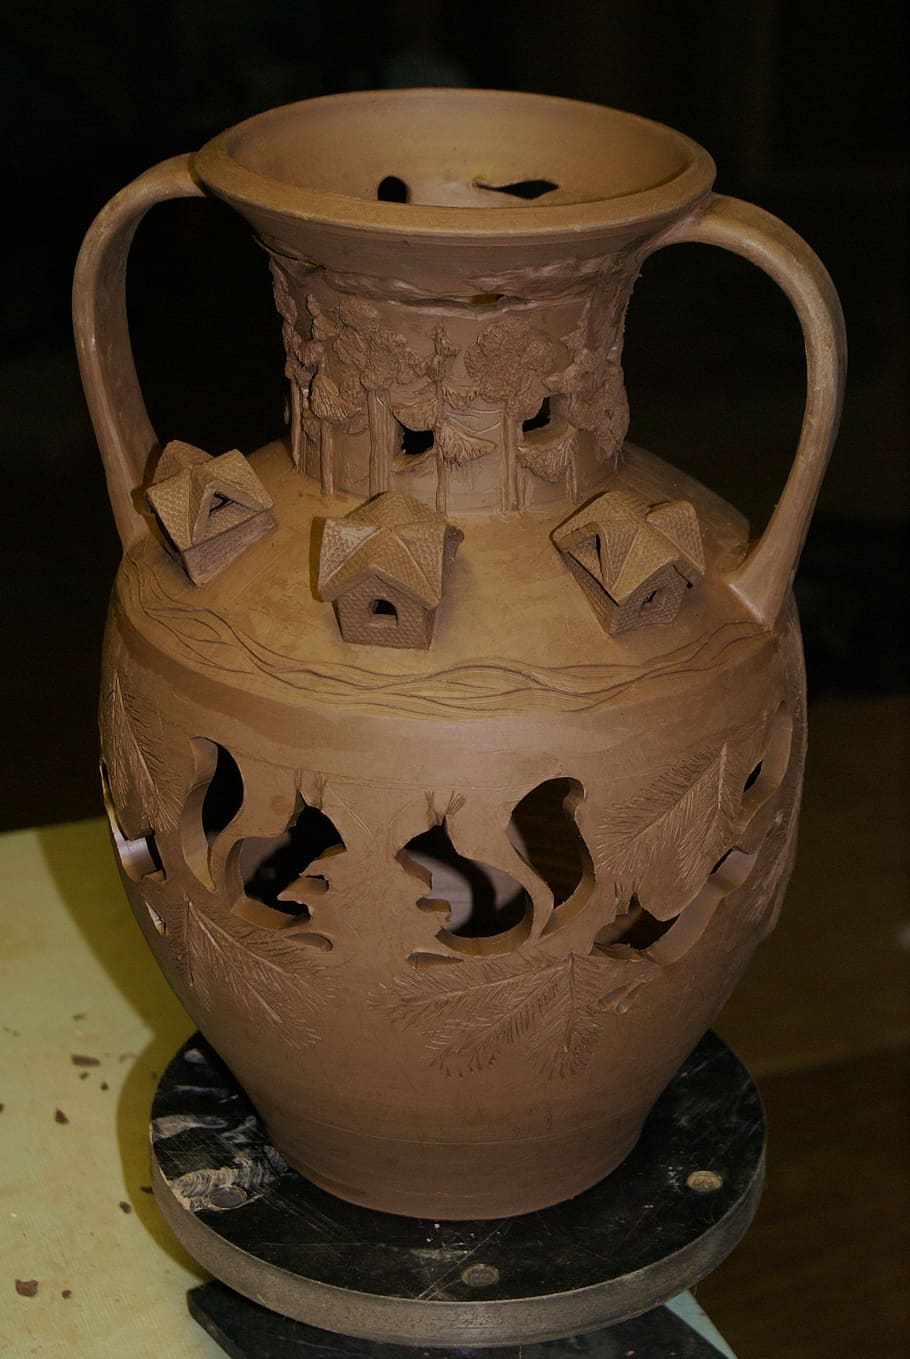 keramik, tanah liat, kendi, tembikar, budaya, gerabah, kerajinan, vas, di dalam ruangan, close-up